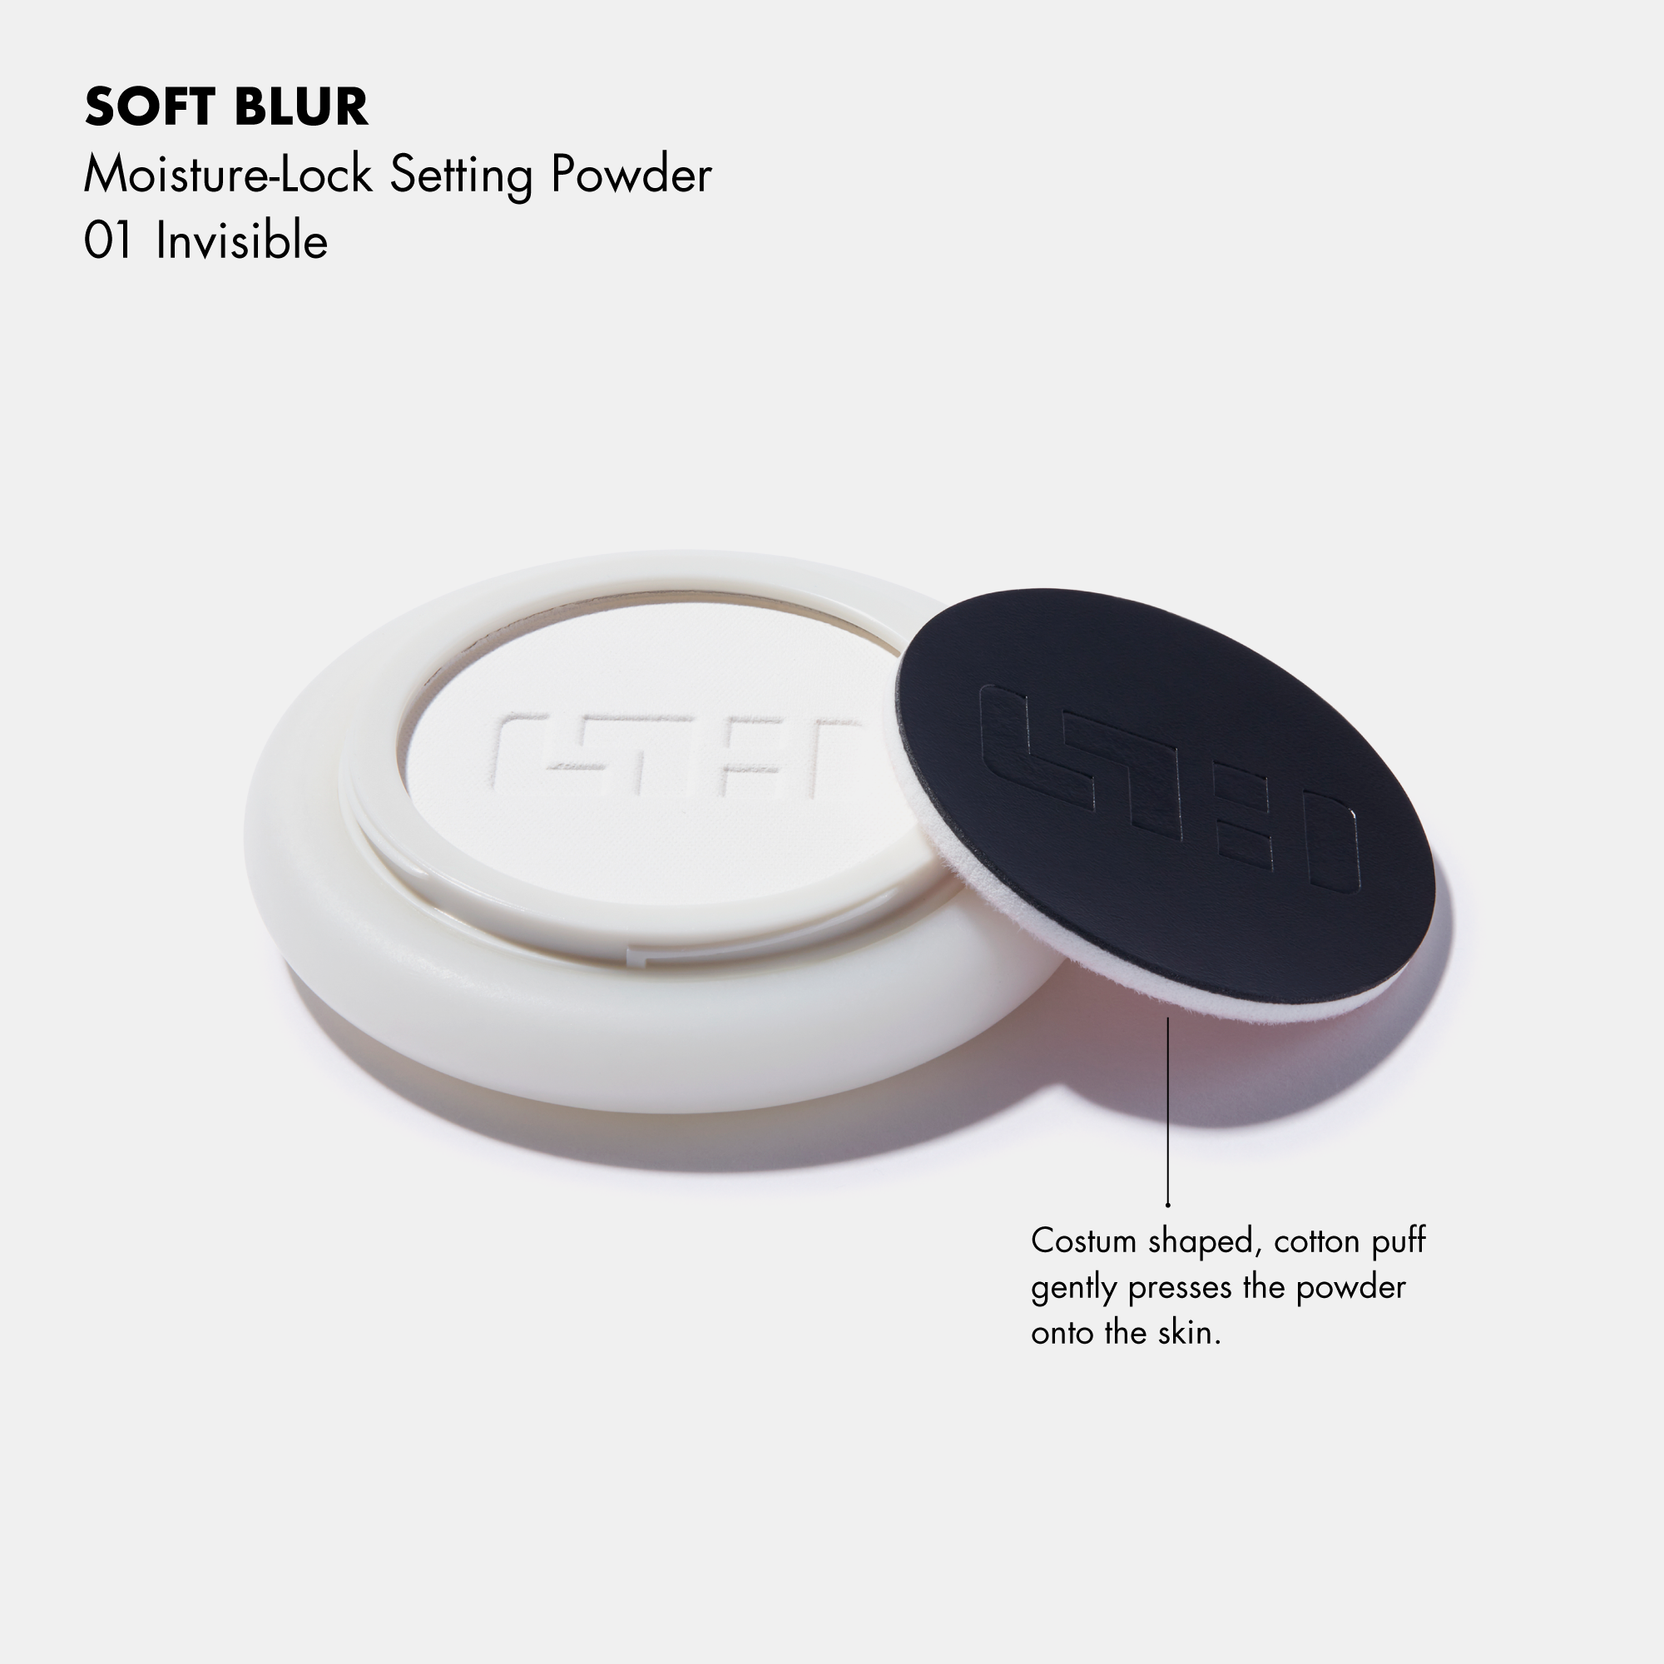 SOFT BLUR Moisture-Lock Setting Powder